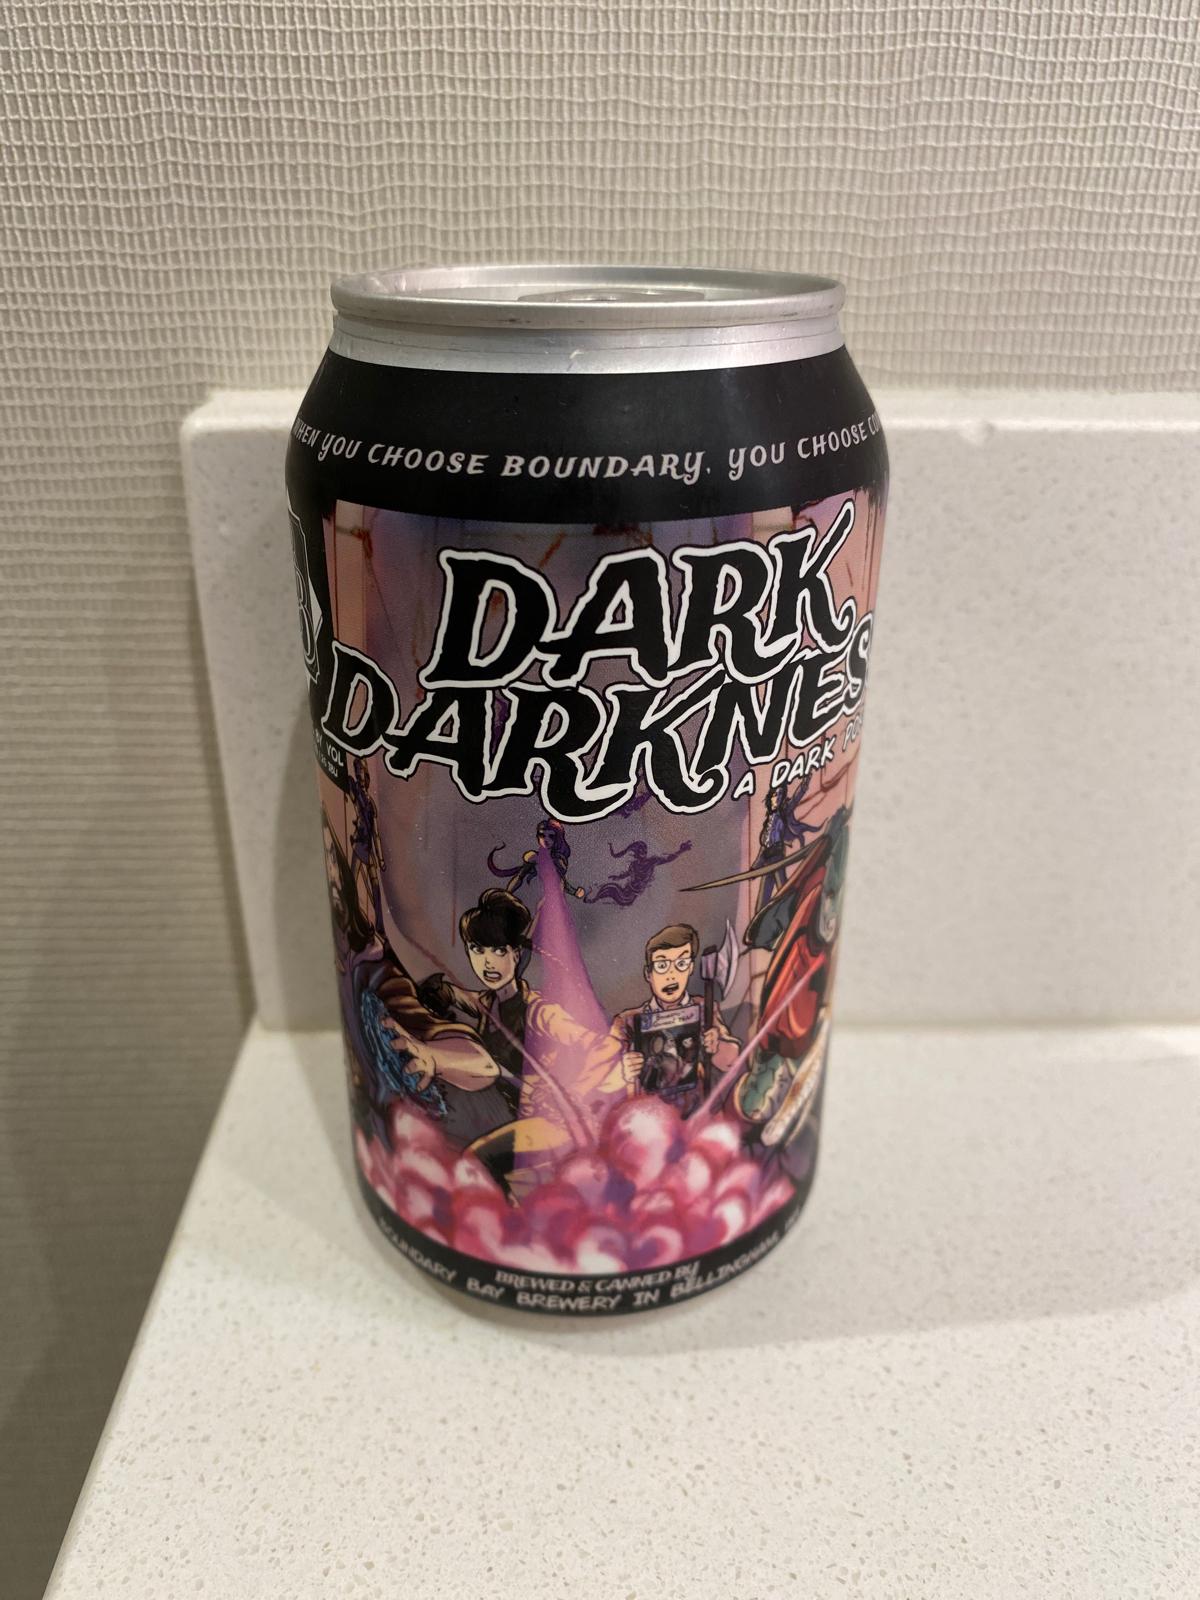 Dark Darkness